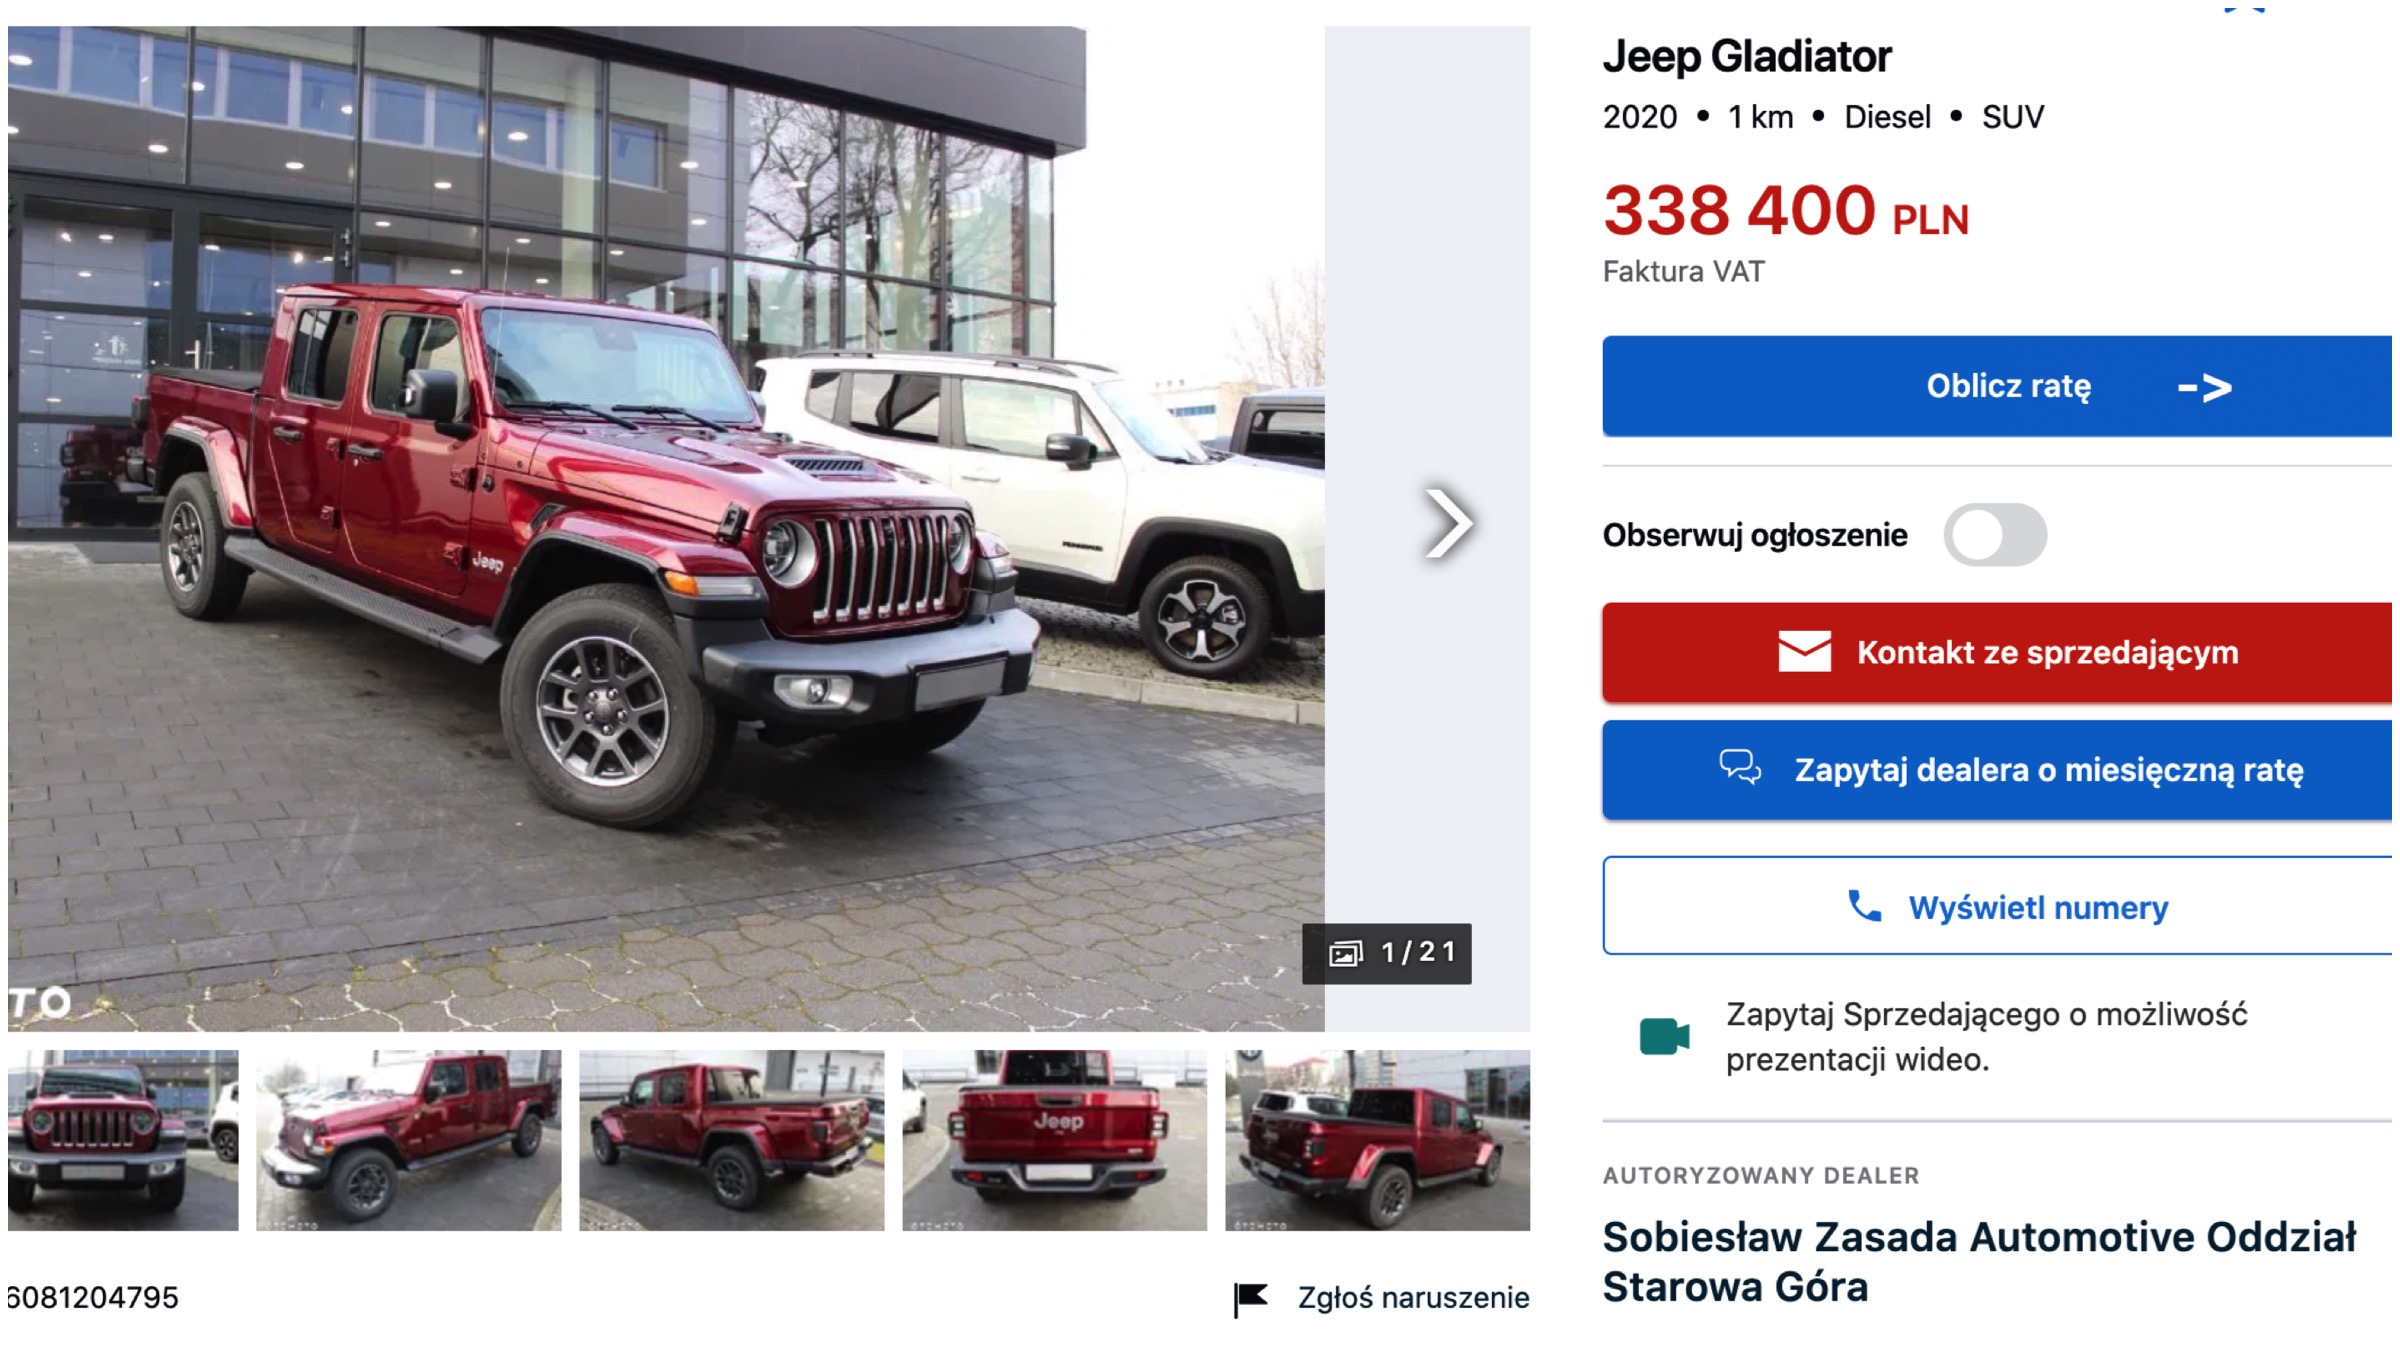 Jeep Gladiator Polska